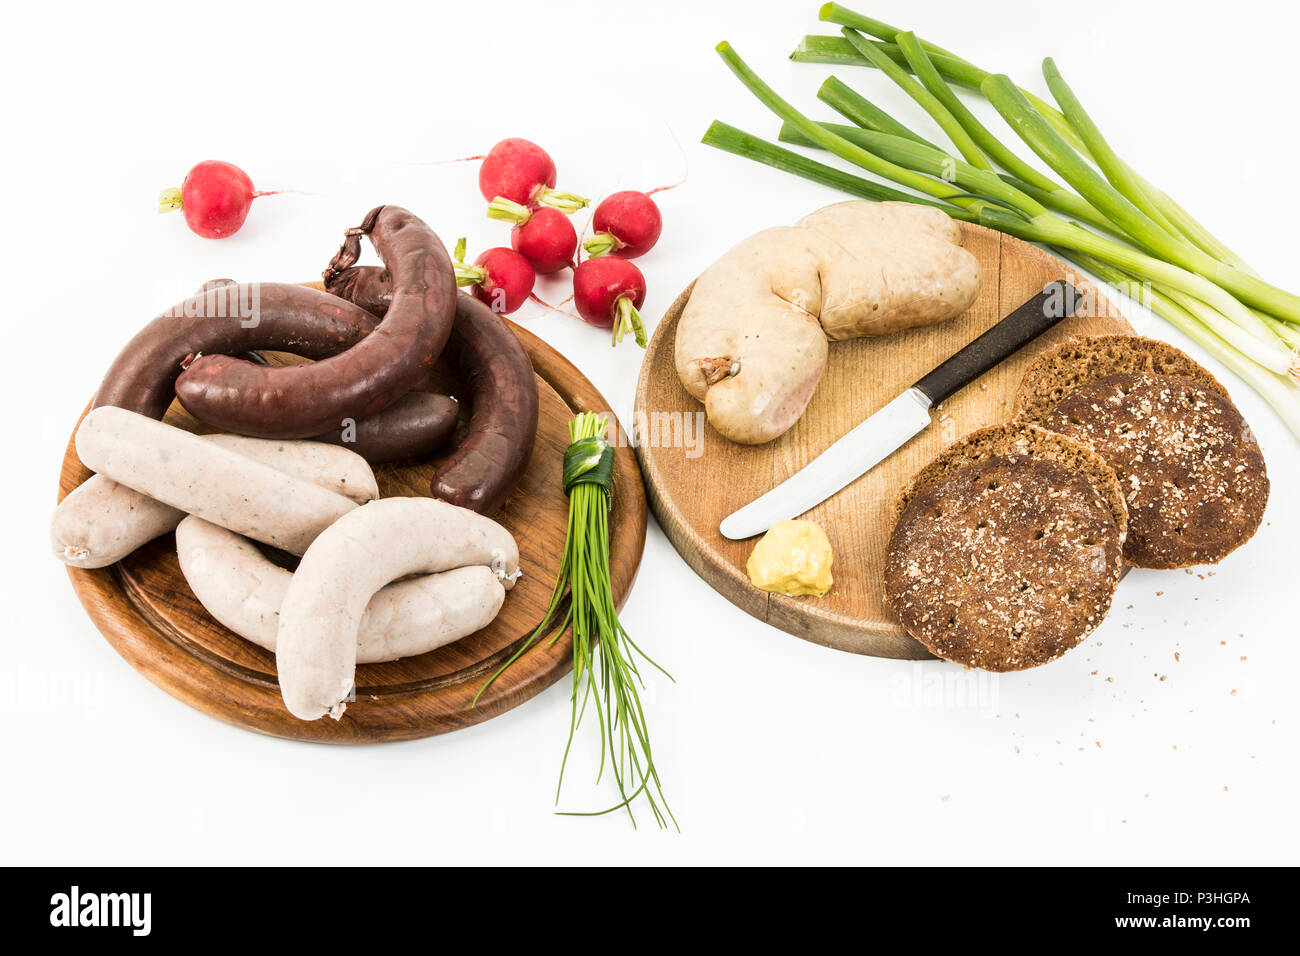 Leberwurst, Blutwurst, Frühlingszwiebeln, Radieschen, Schnittlauch, Senf und Brot auf weißem Hintergrund Stock Photo